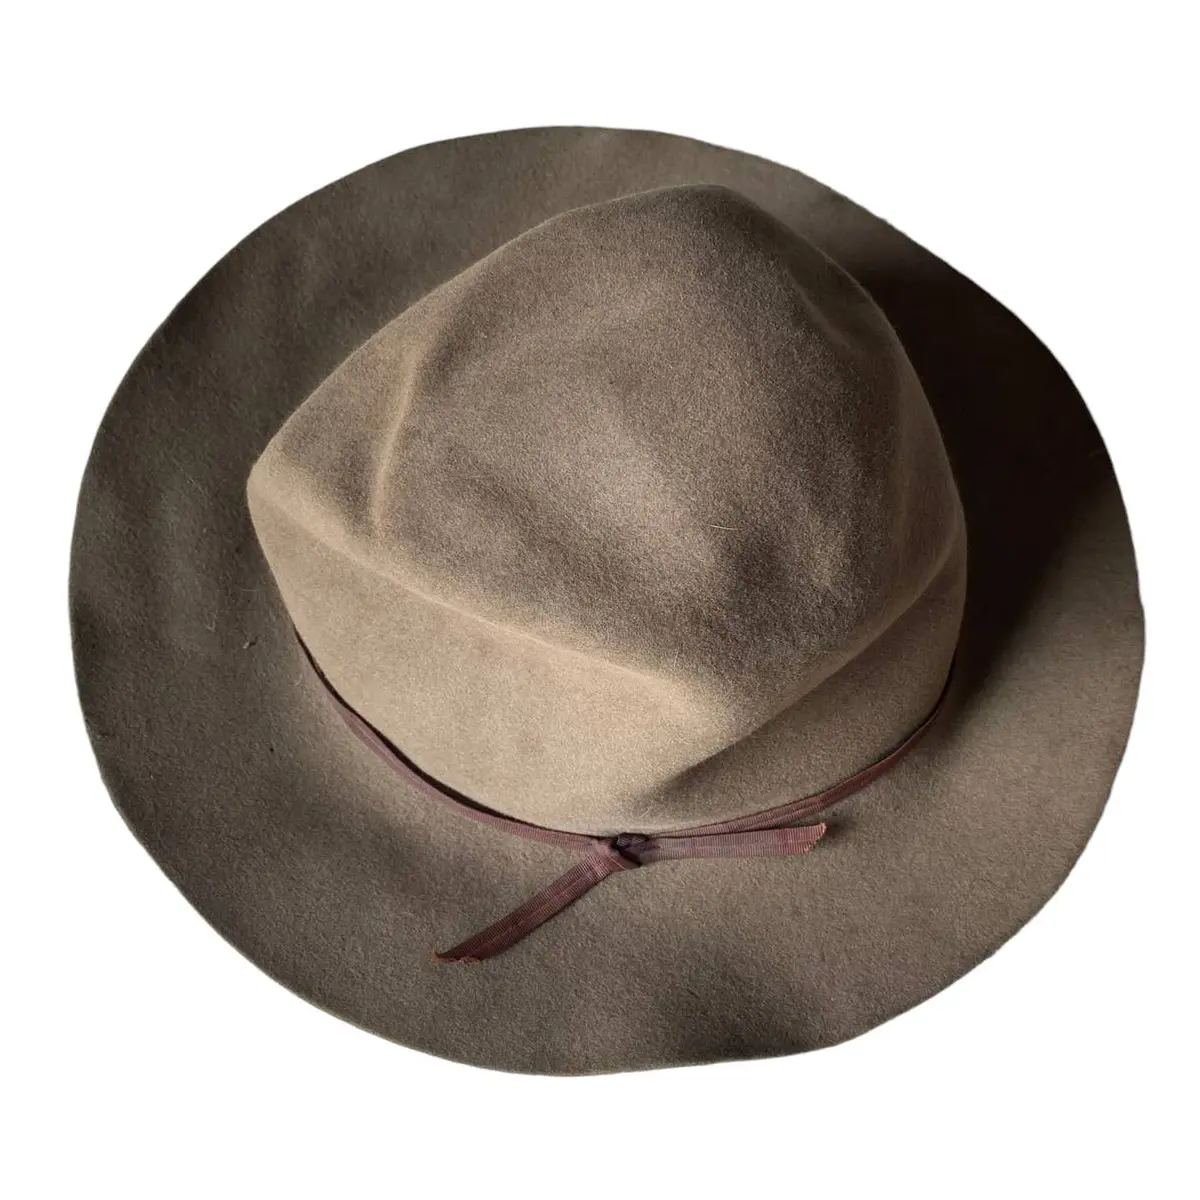 Jackson Hole Hat Co. Gray Brown Hat 8X XXXXXXXX | eBay